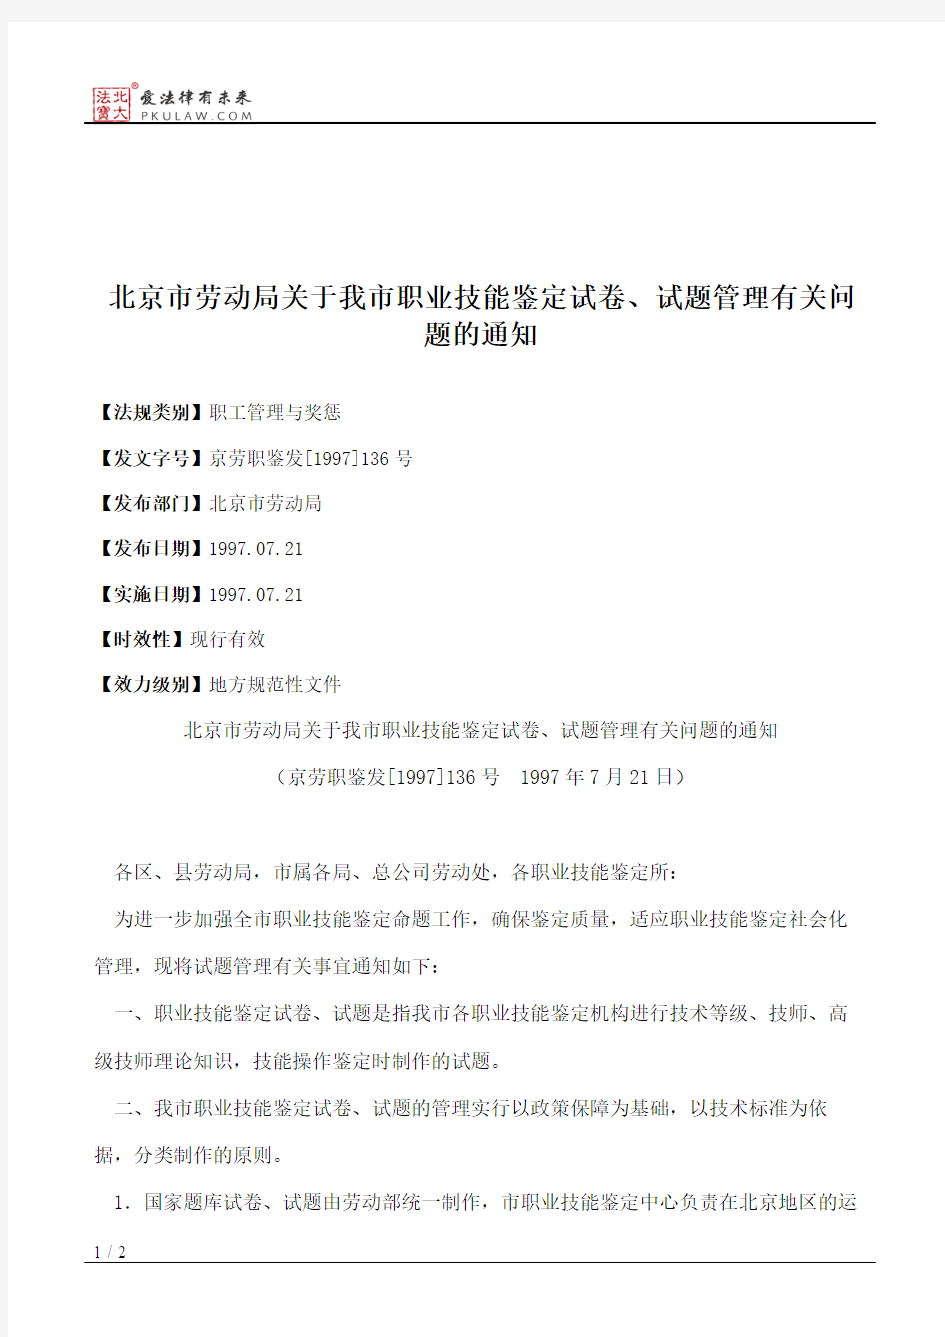 北京市劳动局关于我市职业技能鉴定试卷、试题管理有关问题的通知